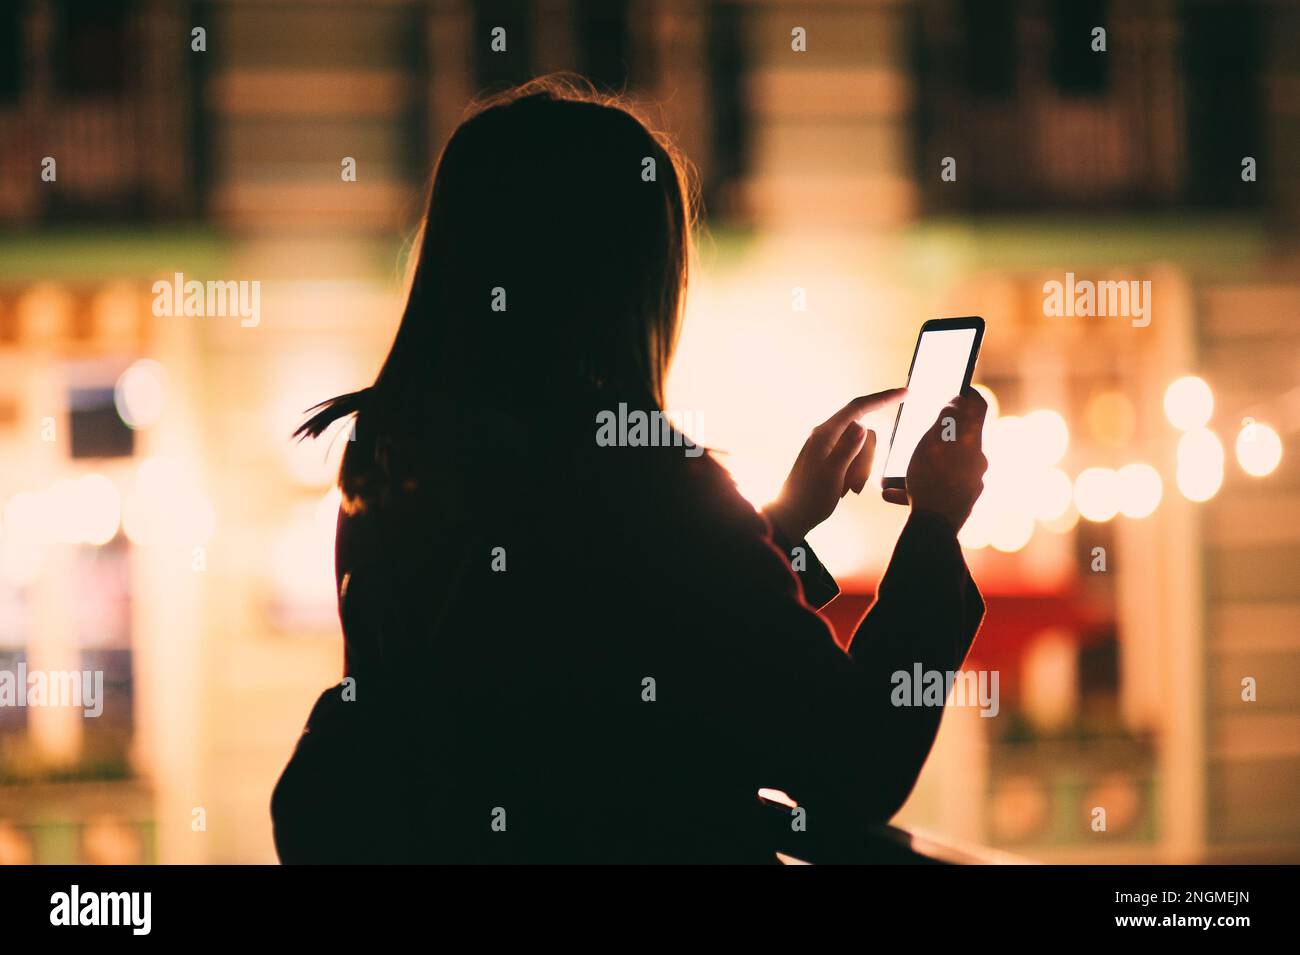 Silhouette giovane donna urbana che tiene in mano un moderno smartphone in bianco schermo di notte, contro edifici illuminati città, bokeh luminoso sfondo Foto Stock